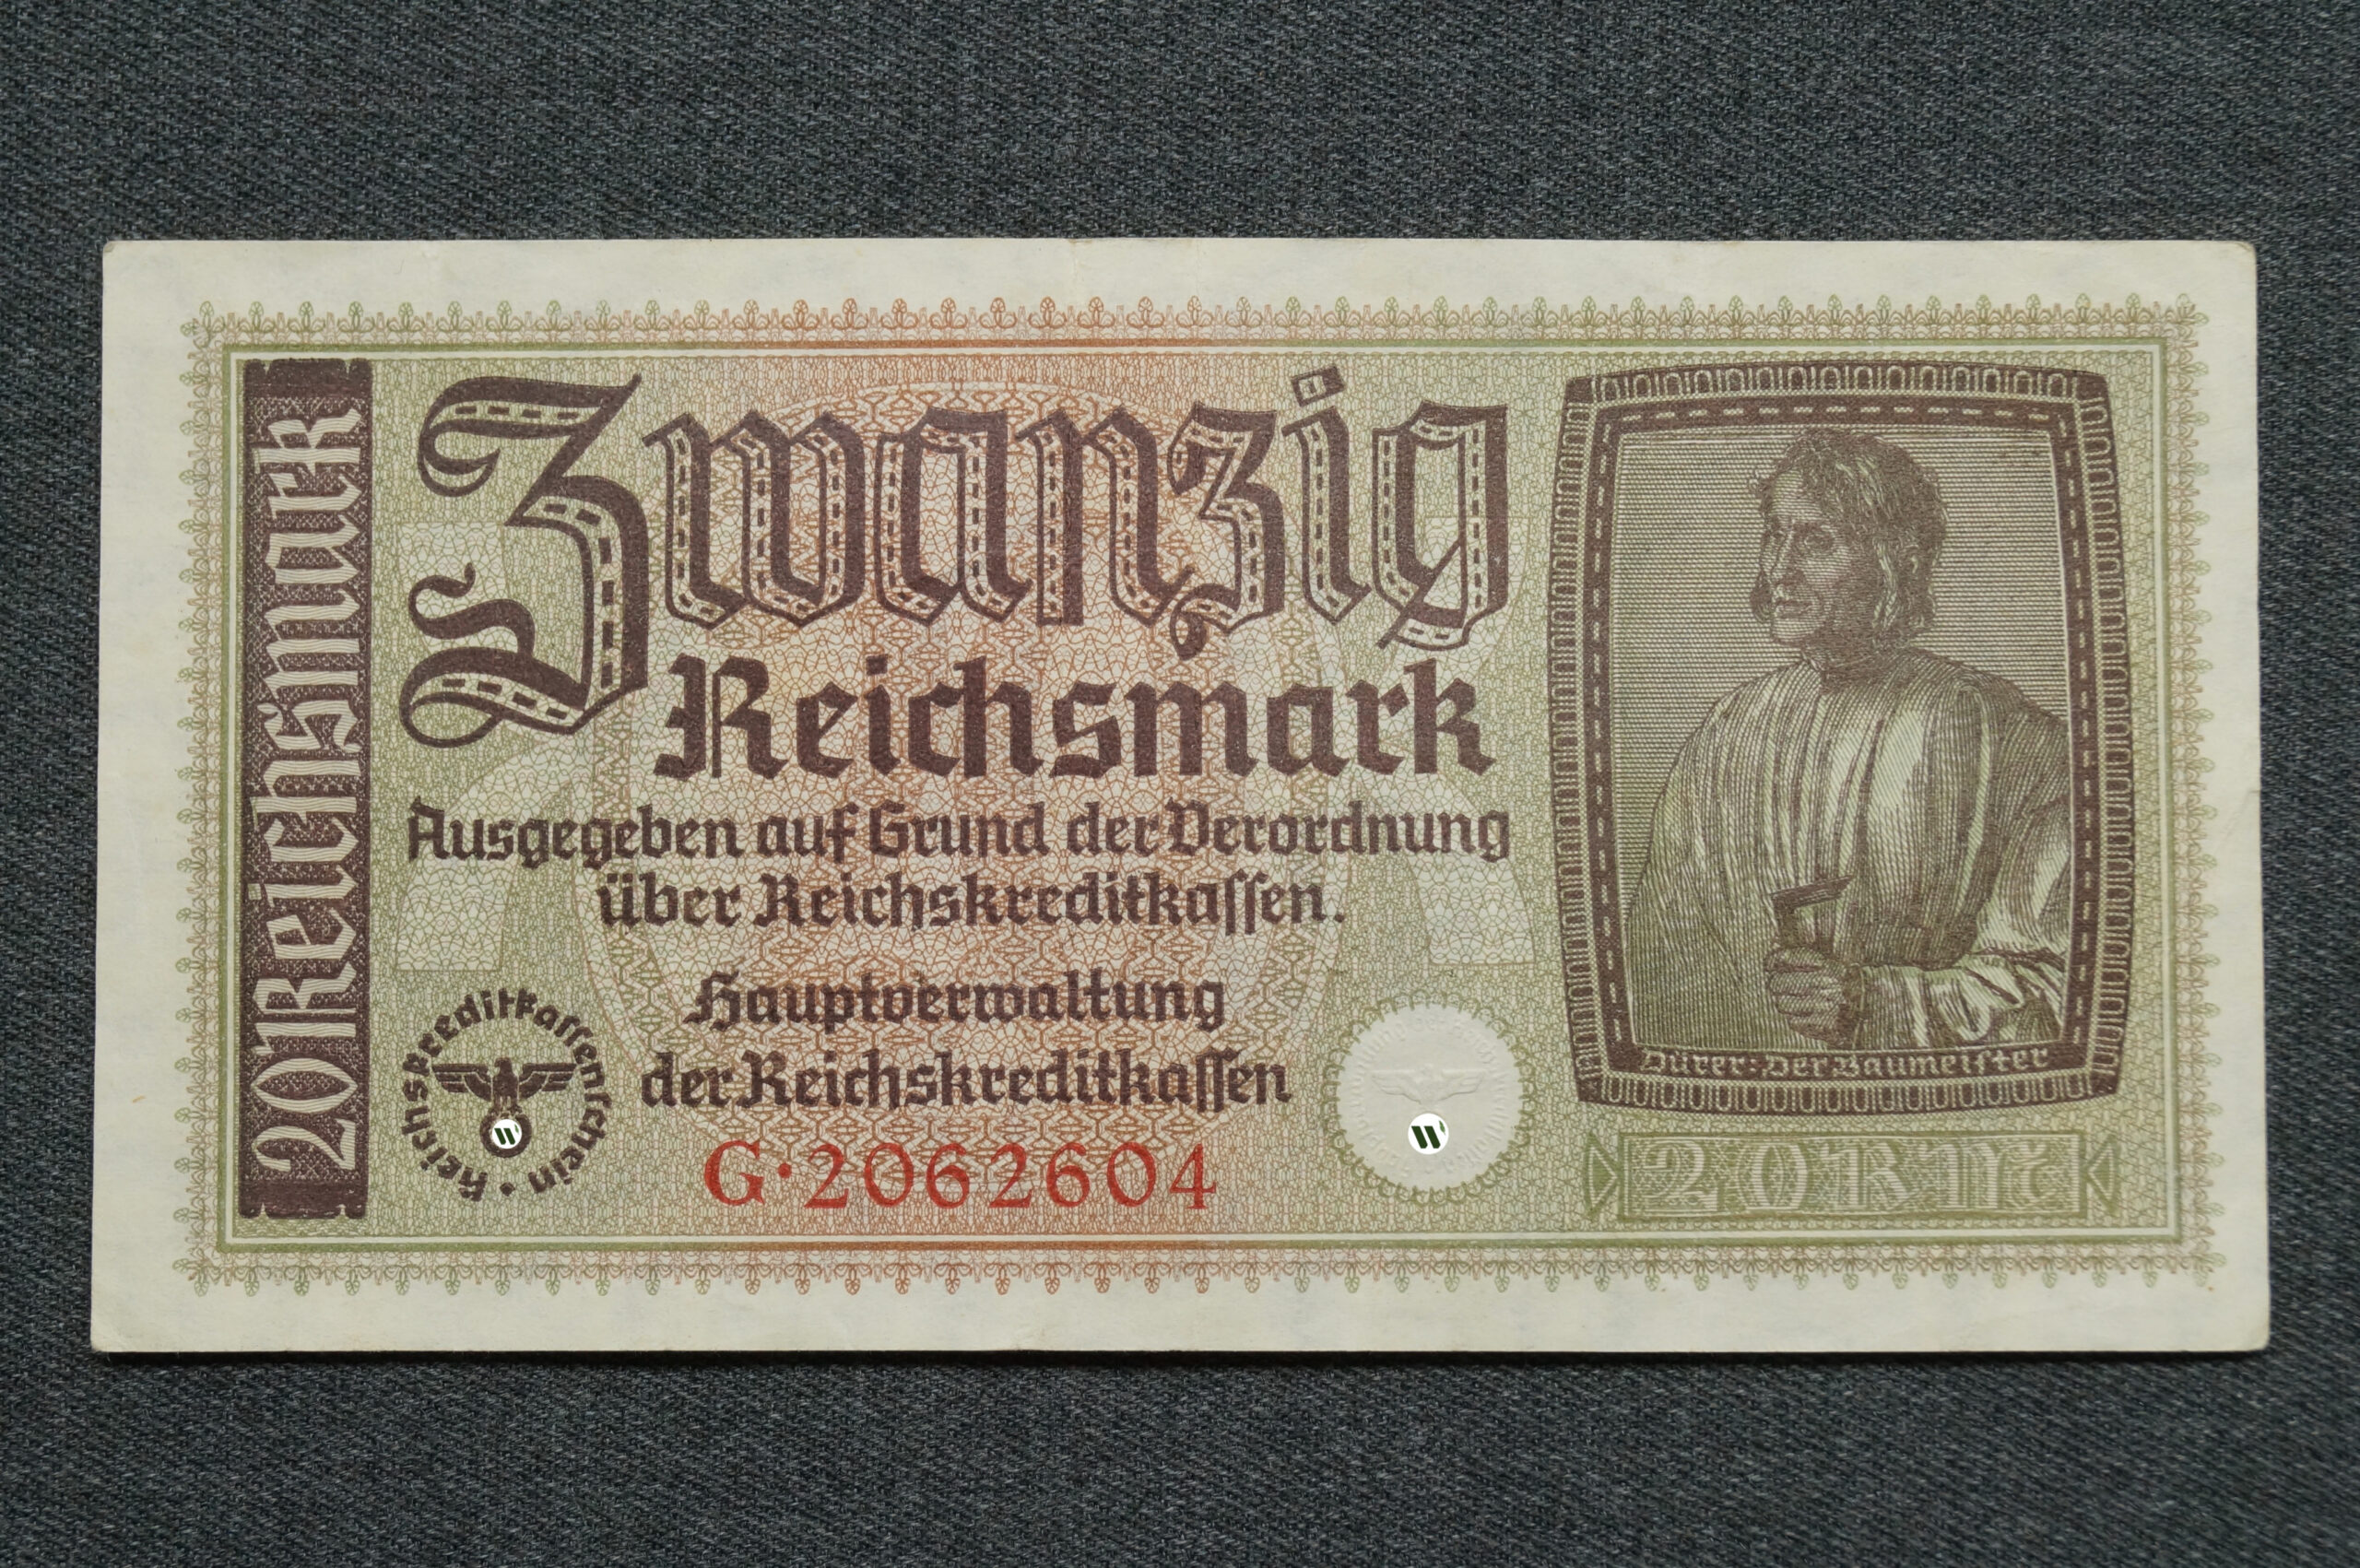 Немецкая банкнота номиналом в 20 рейхсмарок для окупированных территорий